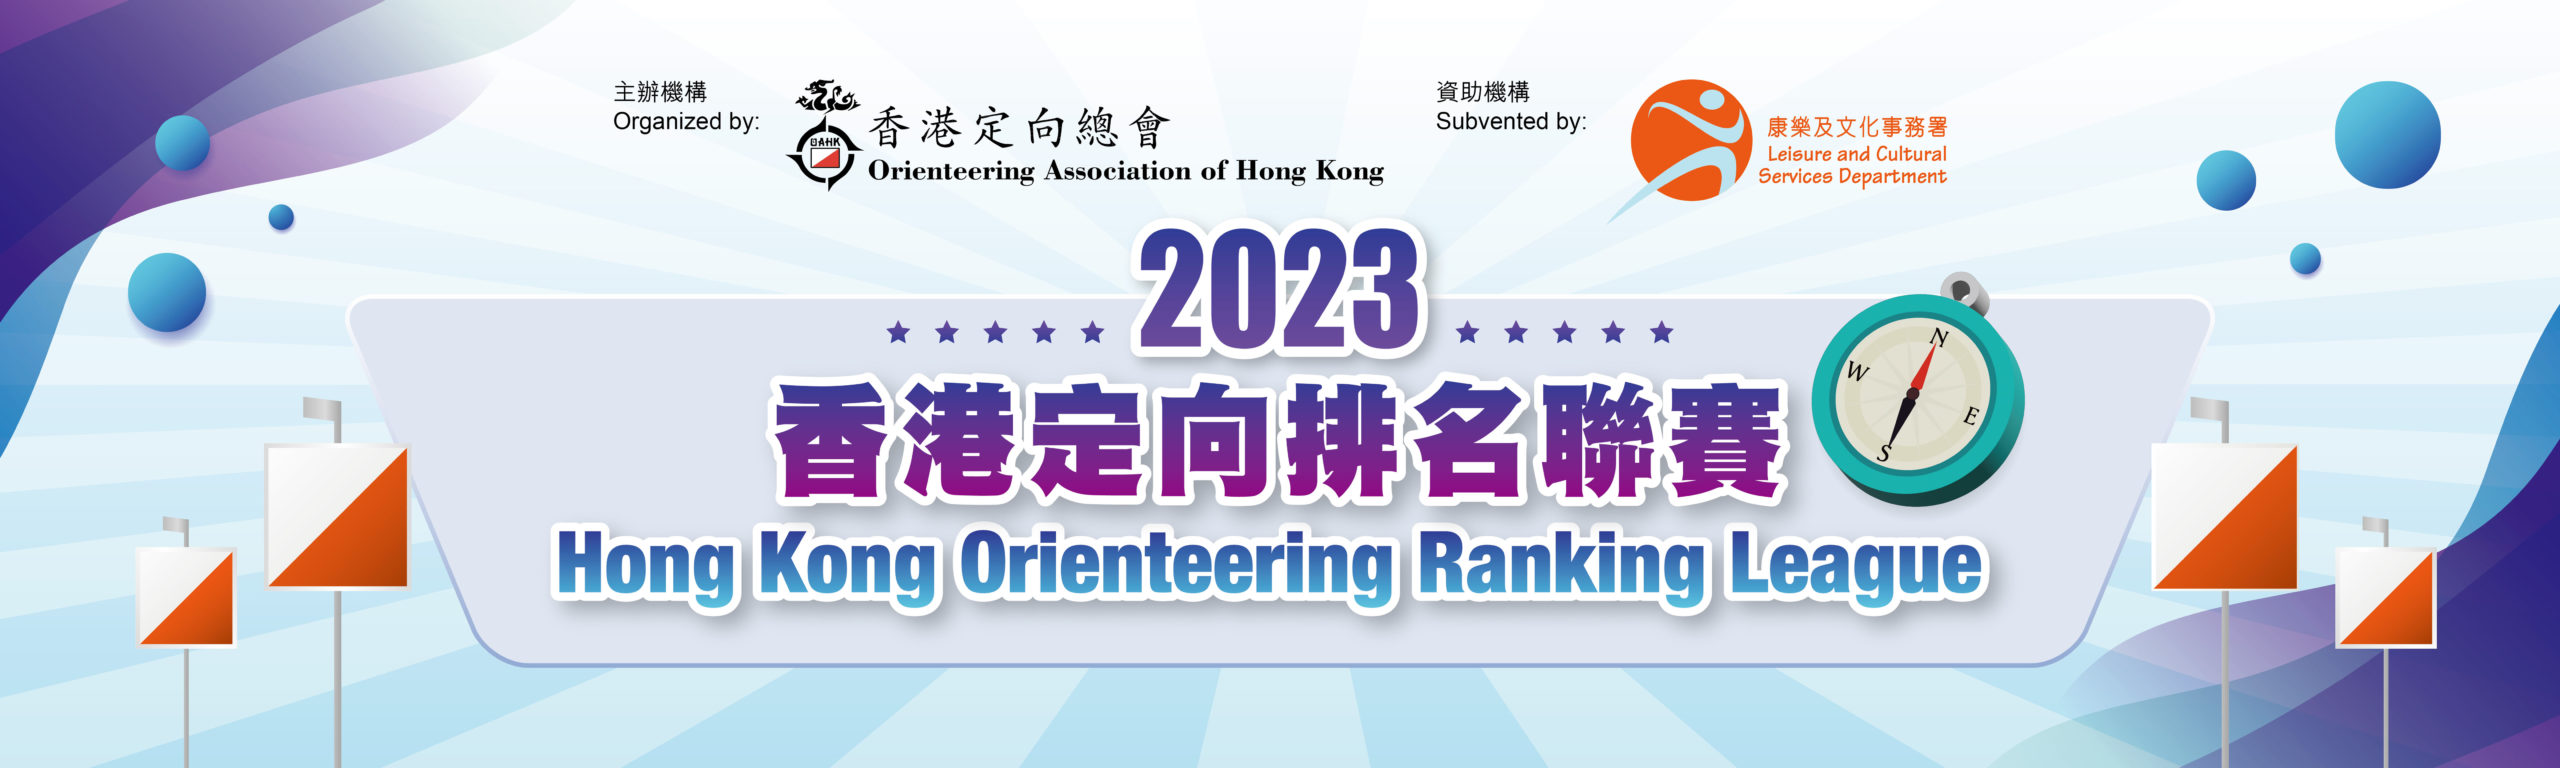 OAHK_香港定向排名聯賽2022_10ftWx3ftH_3